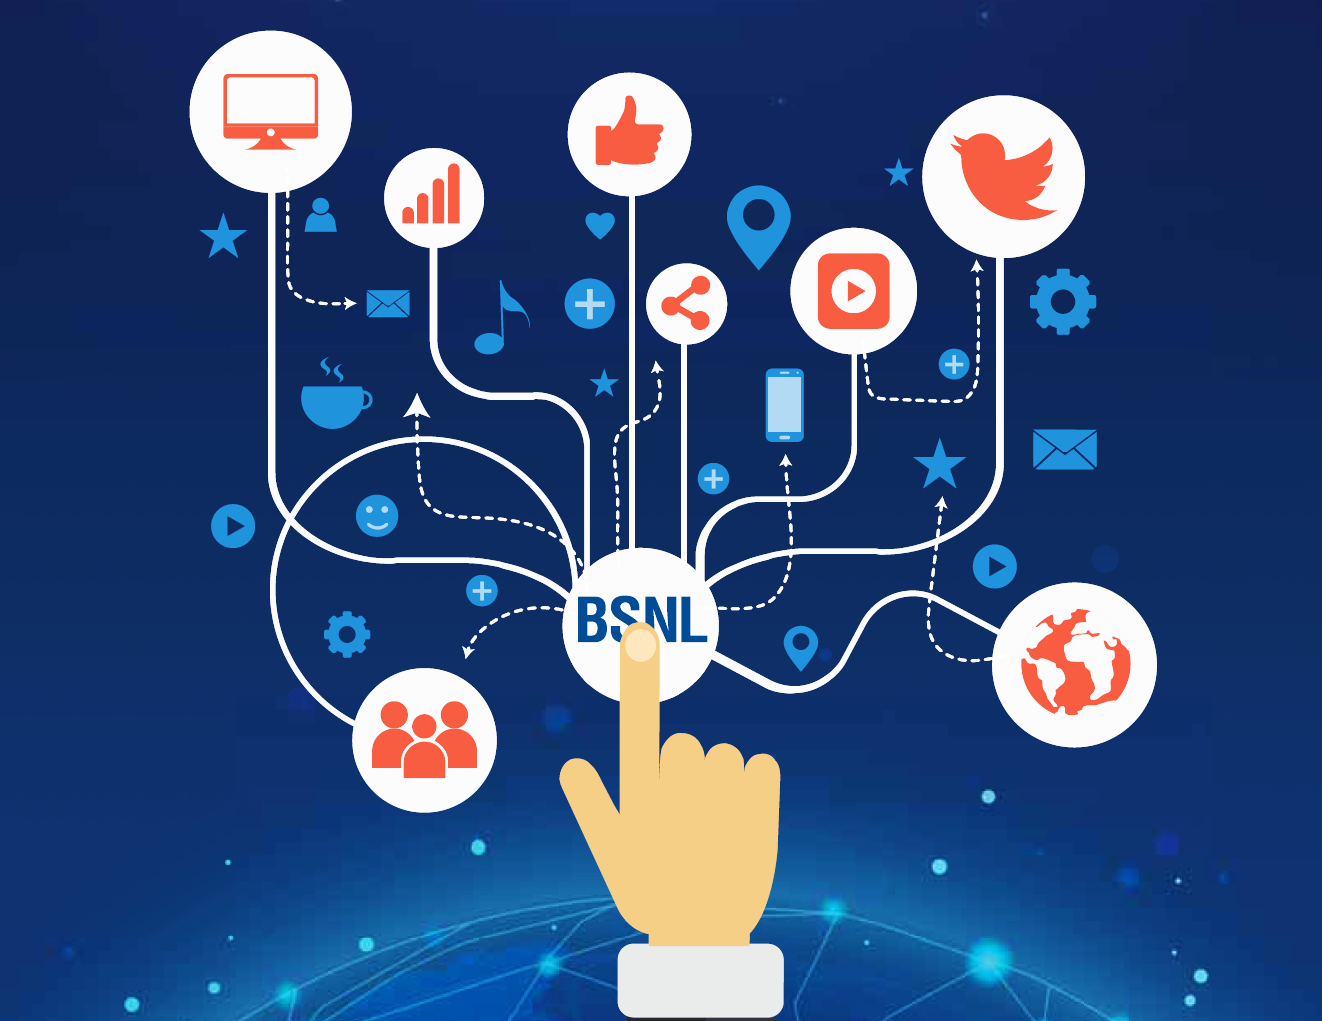 BSNL Logo - LogoDix